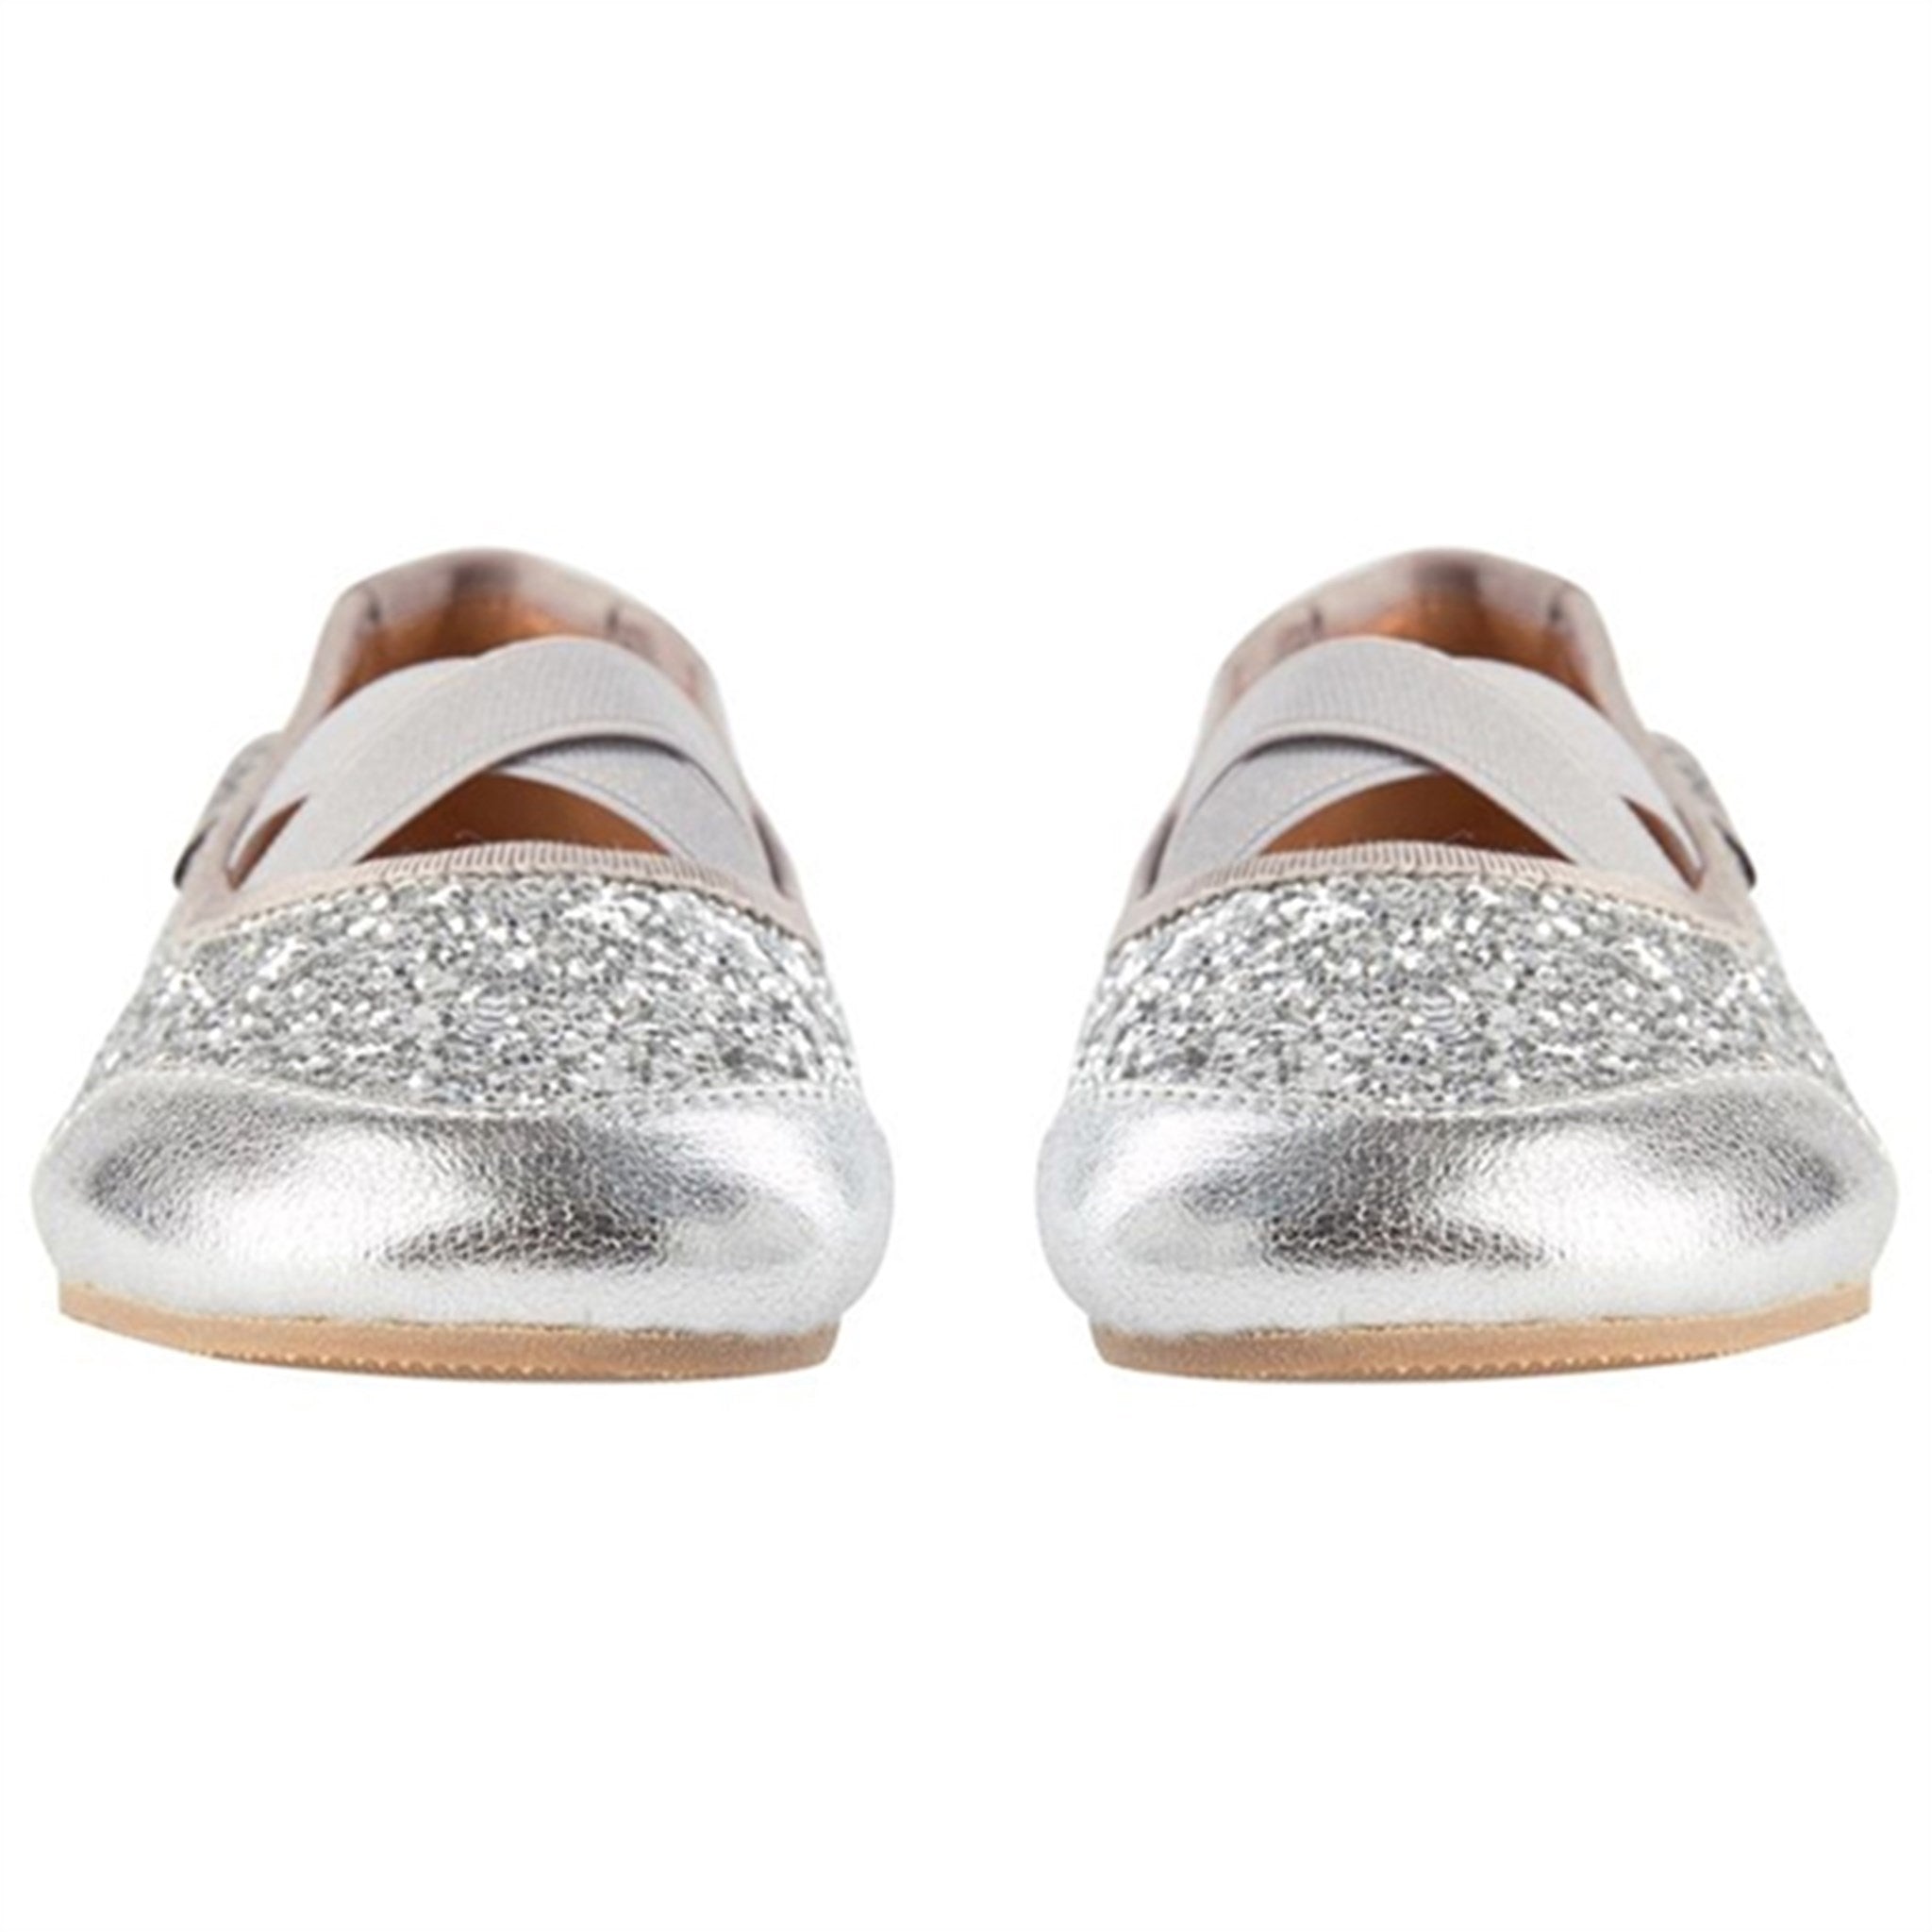 Sofie Schnoor Ballerina Indoors Shoes Silver 3